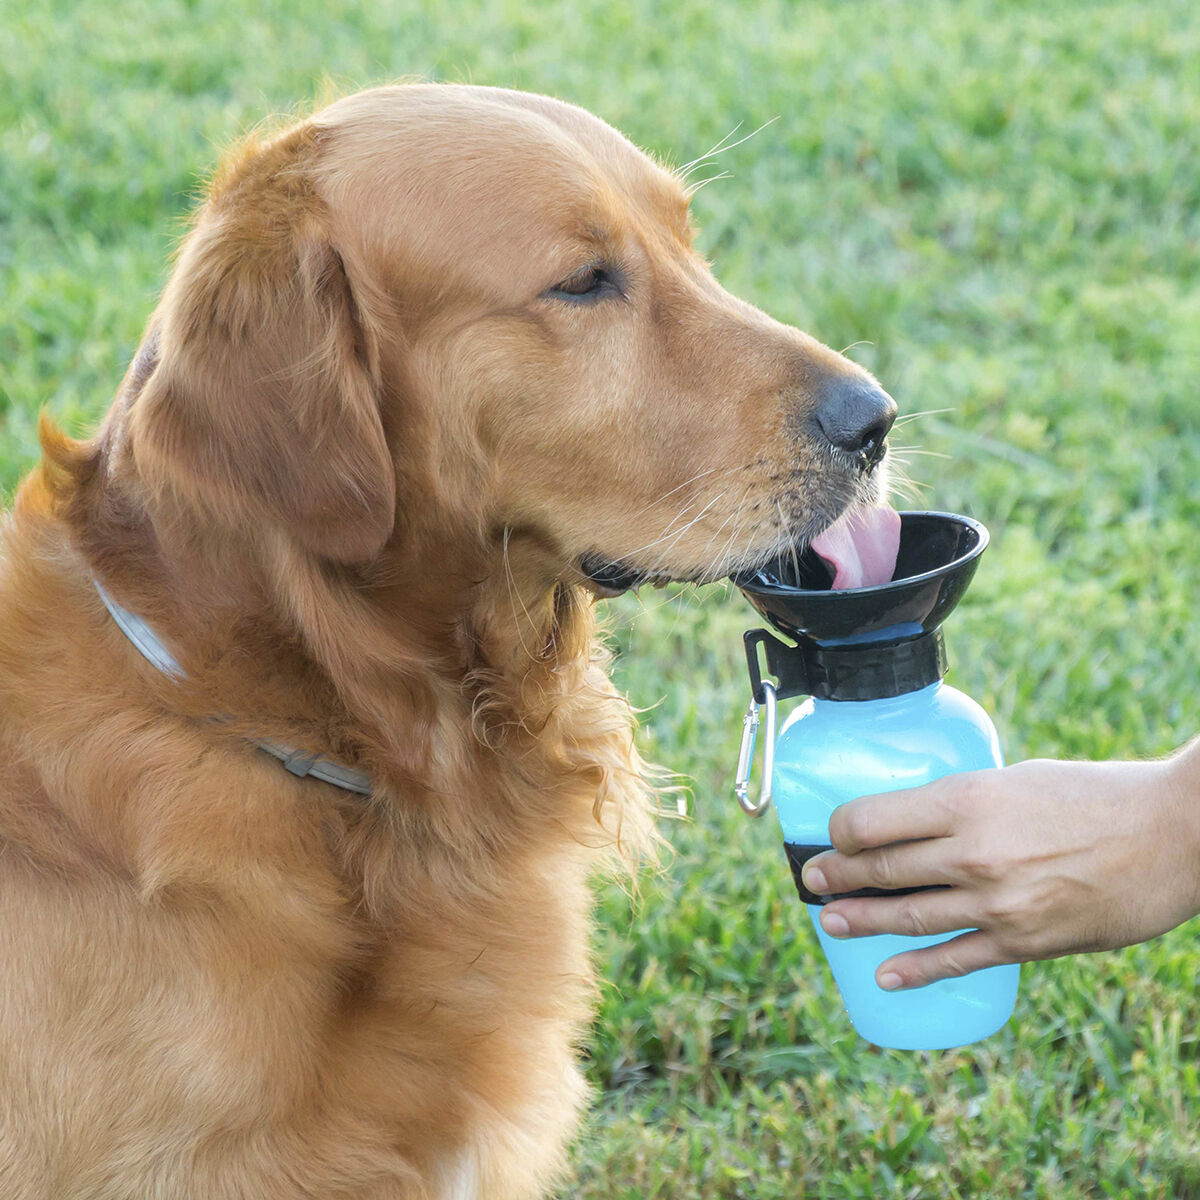 InnovaGoods Dog Water Bottle-Dispenser 